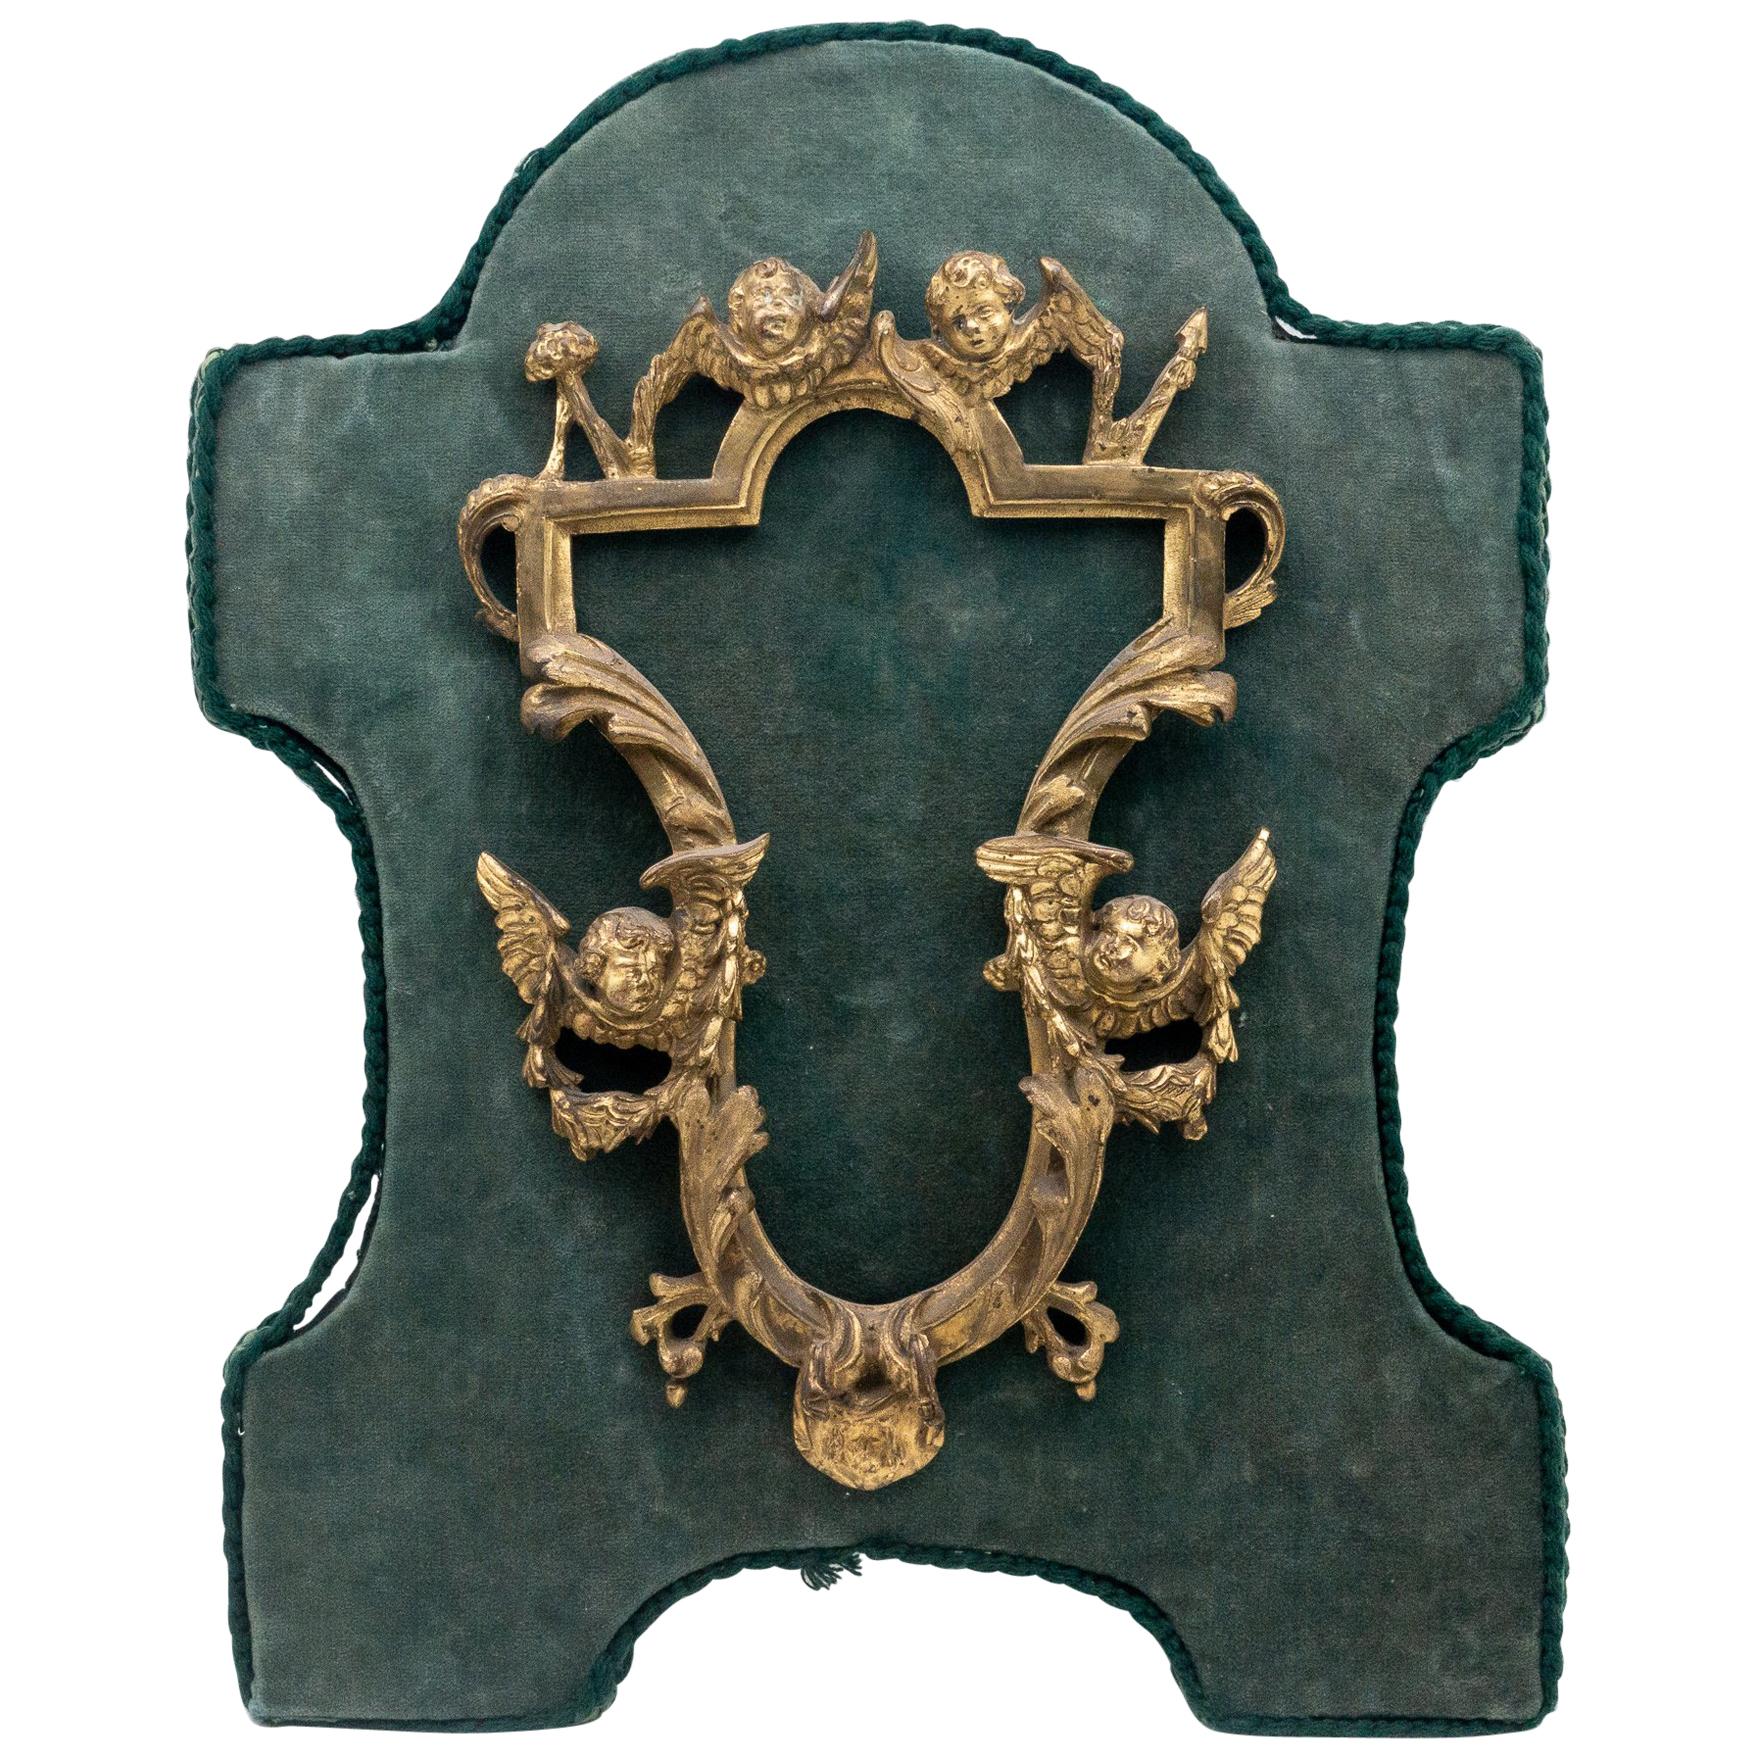 Cadre rococo français du 18ème siècle en bronze doré monté sur velours vert